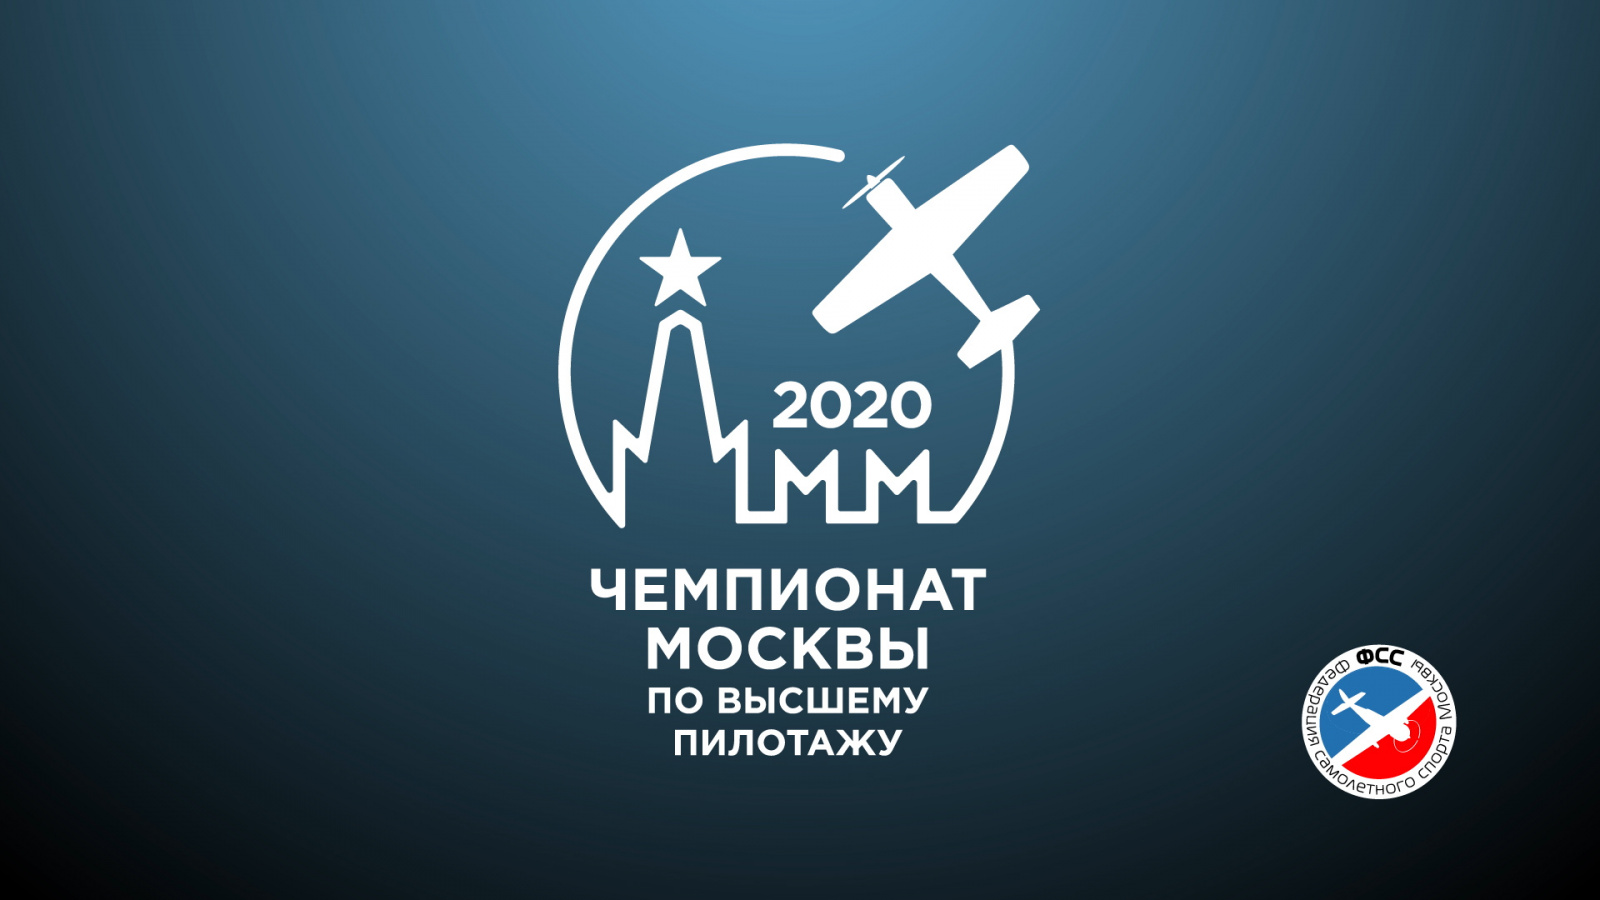 Чемпионат Москвы по высшему пилотажу 2020